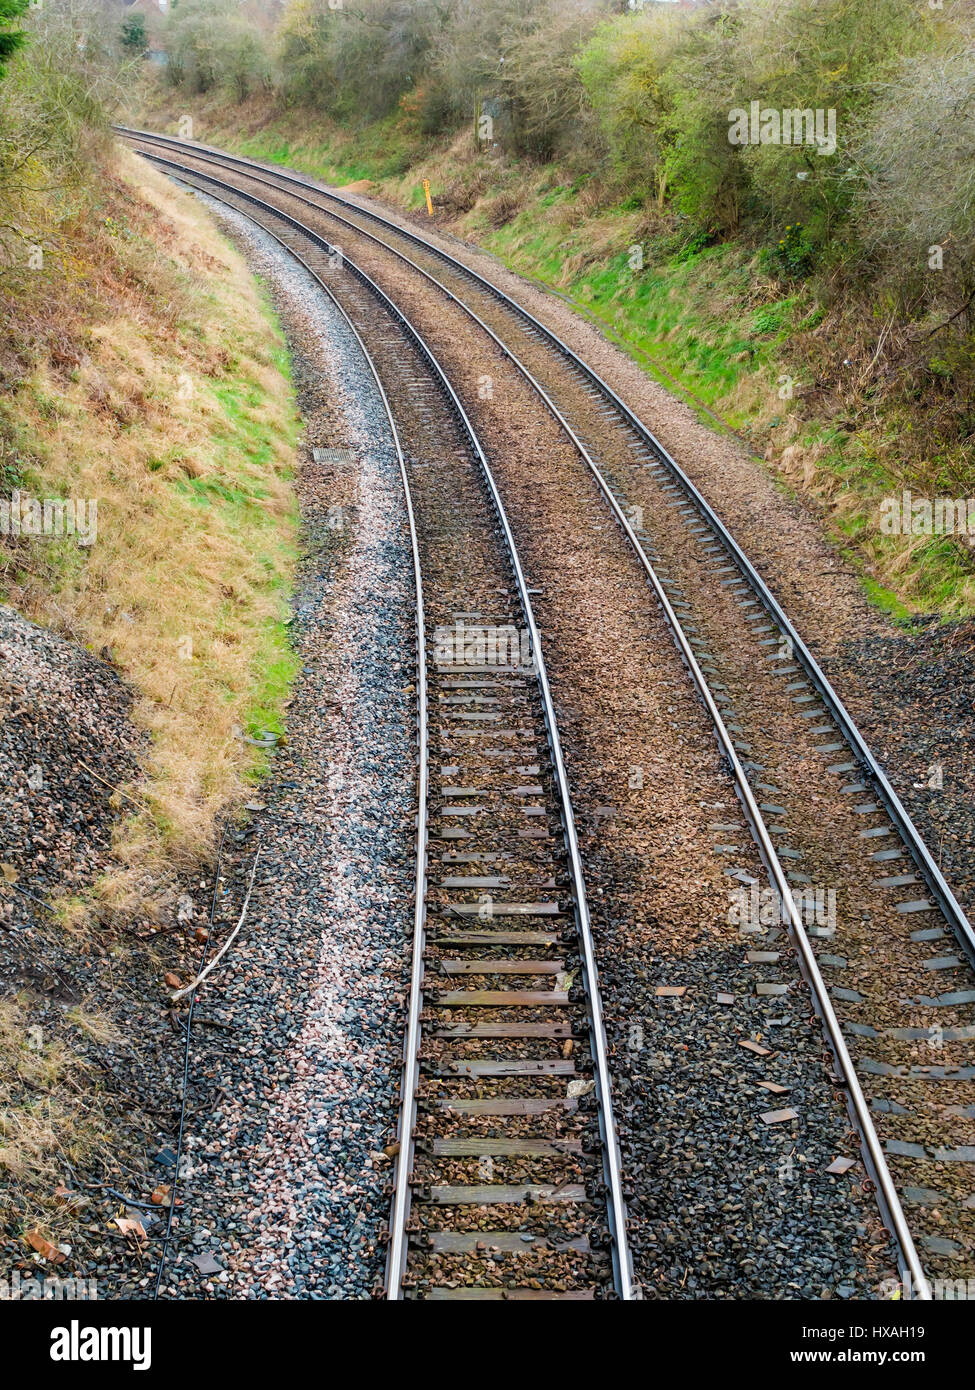 Zwei normalspurigen Eisenbahnstrecken auf einer Kurve in einem Schnitt Stockfoto